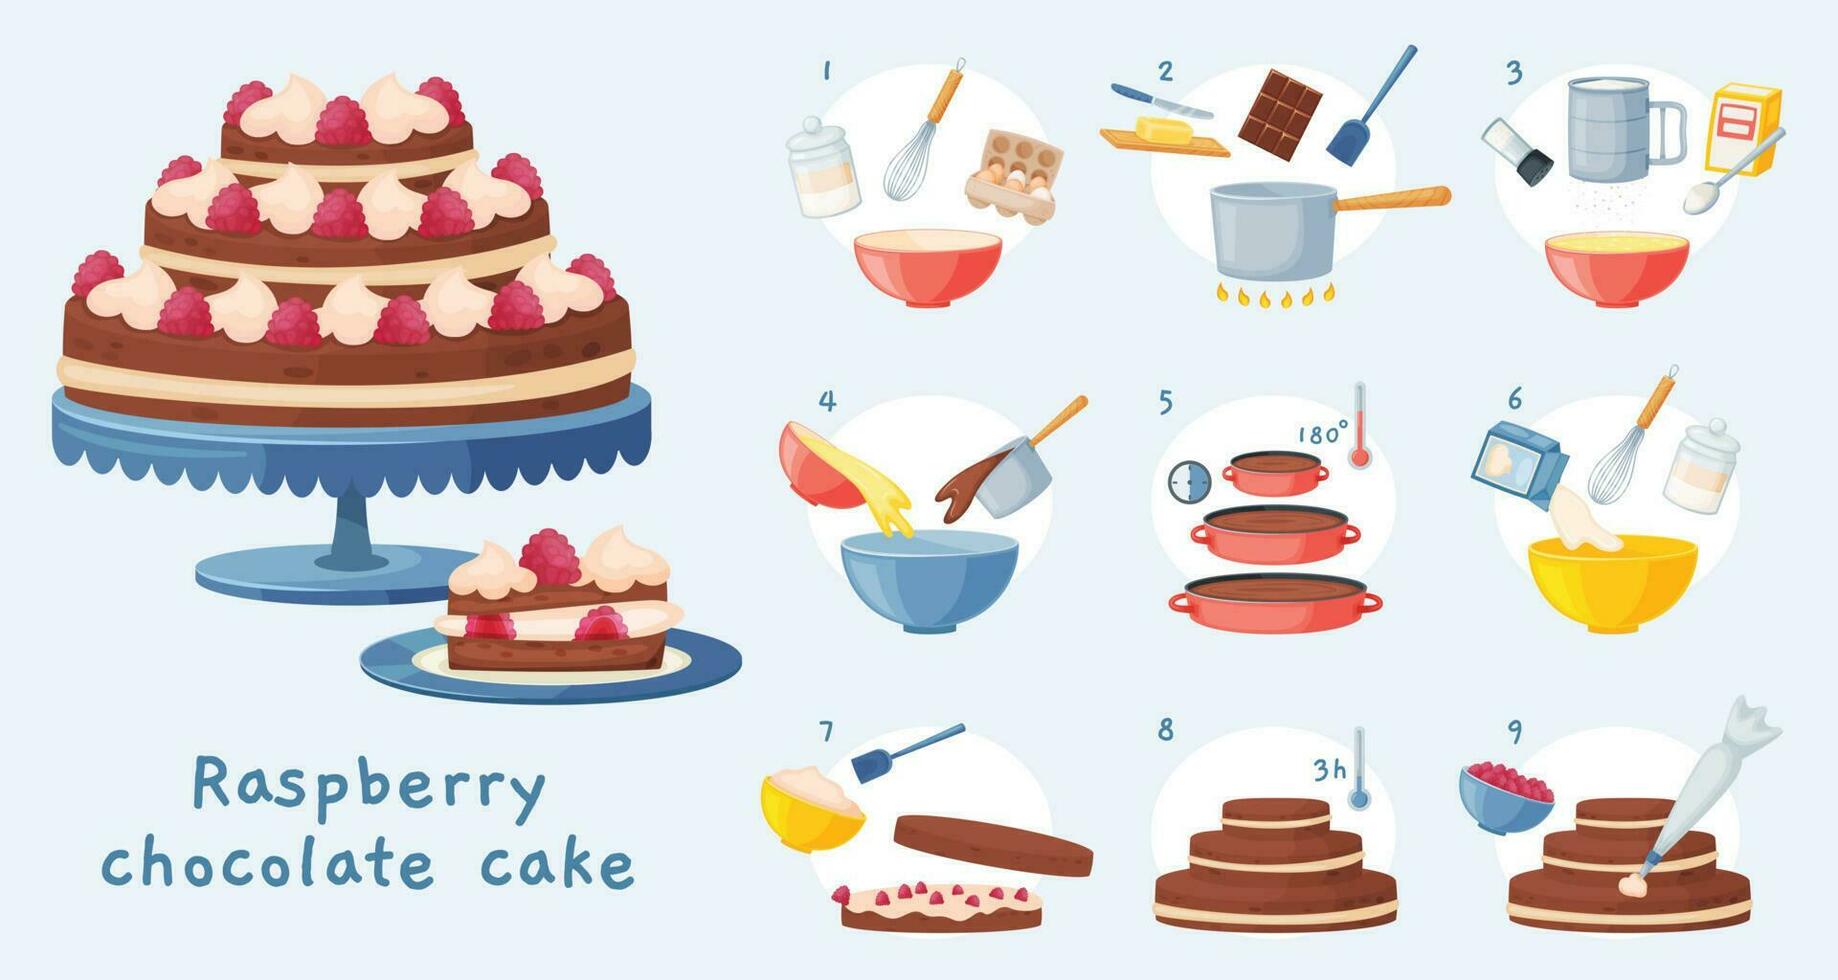 pastel receta, horneando postre paso por paso instrucción. delicioso cumpleaños chocolate pastel con crema, dulce panadería preparación vector ilustración